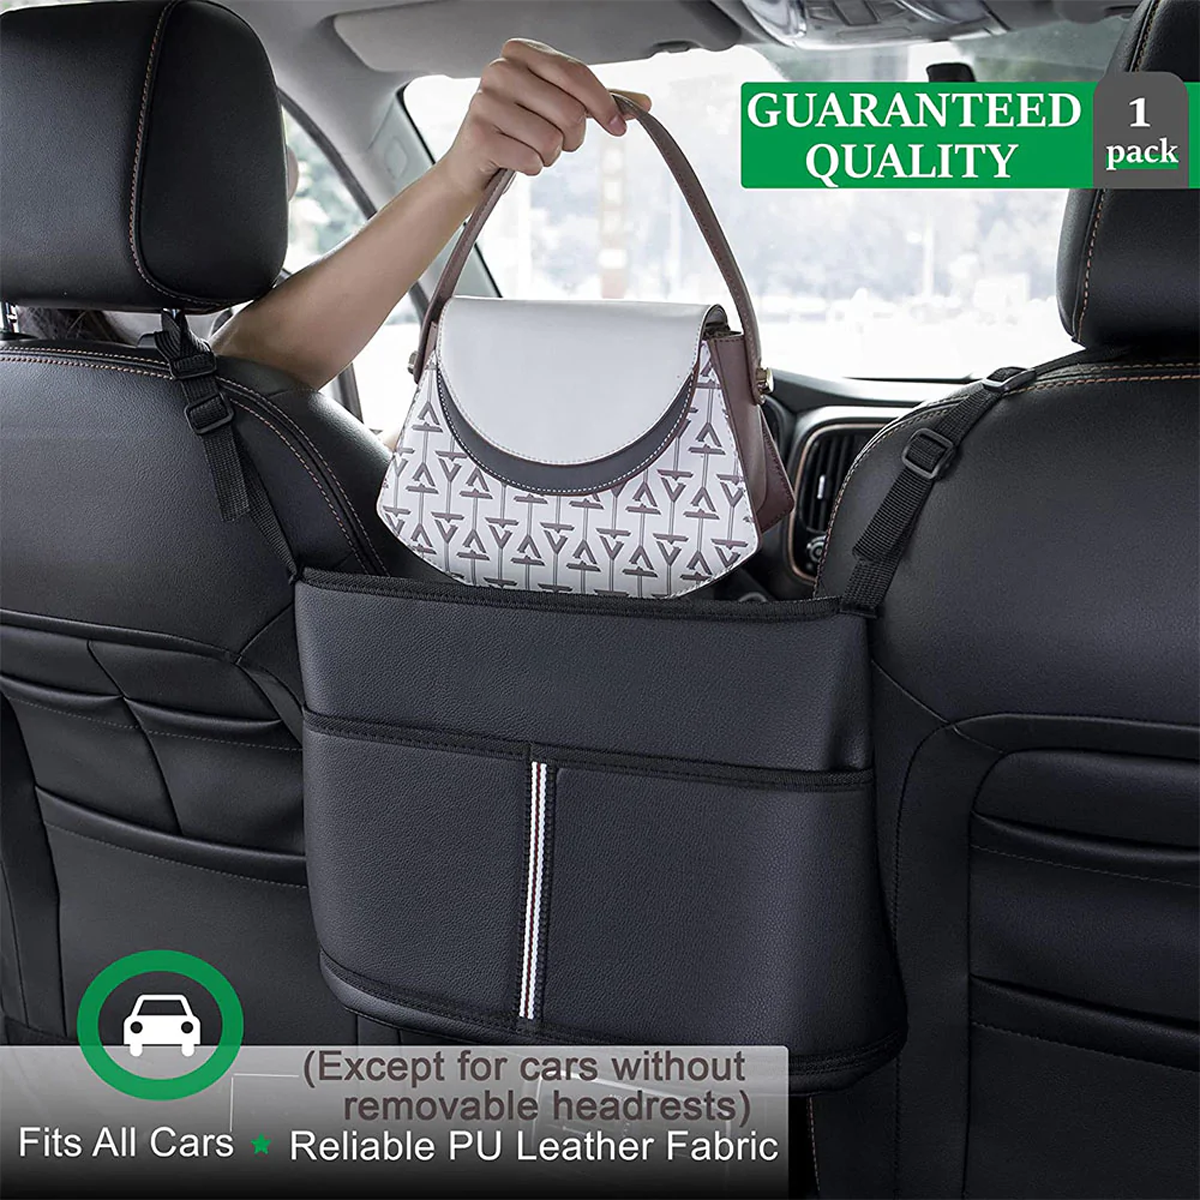 Car Purse Holder for Car Handbag Holder Between Seats Premium PU Leather, Custom Fit For Car, Hanging Car Purse Storage Pocket Back Seat Pet Barrier DLUE223